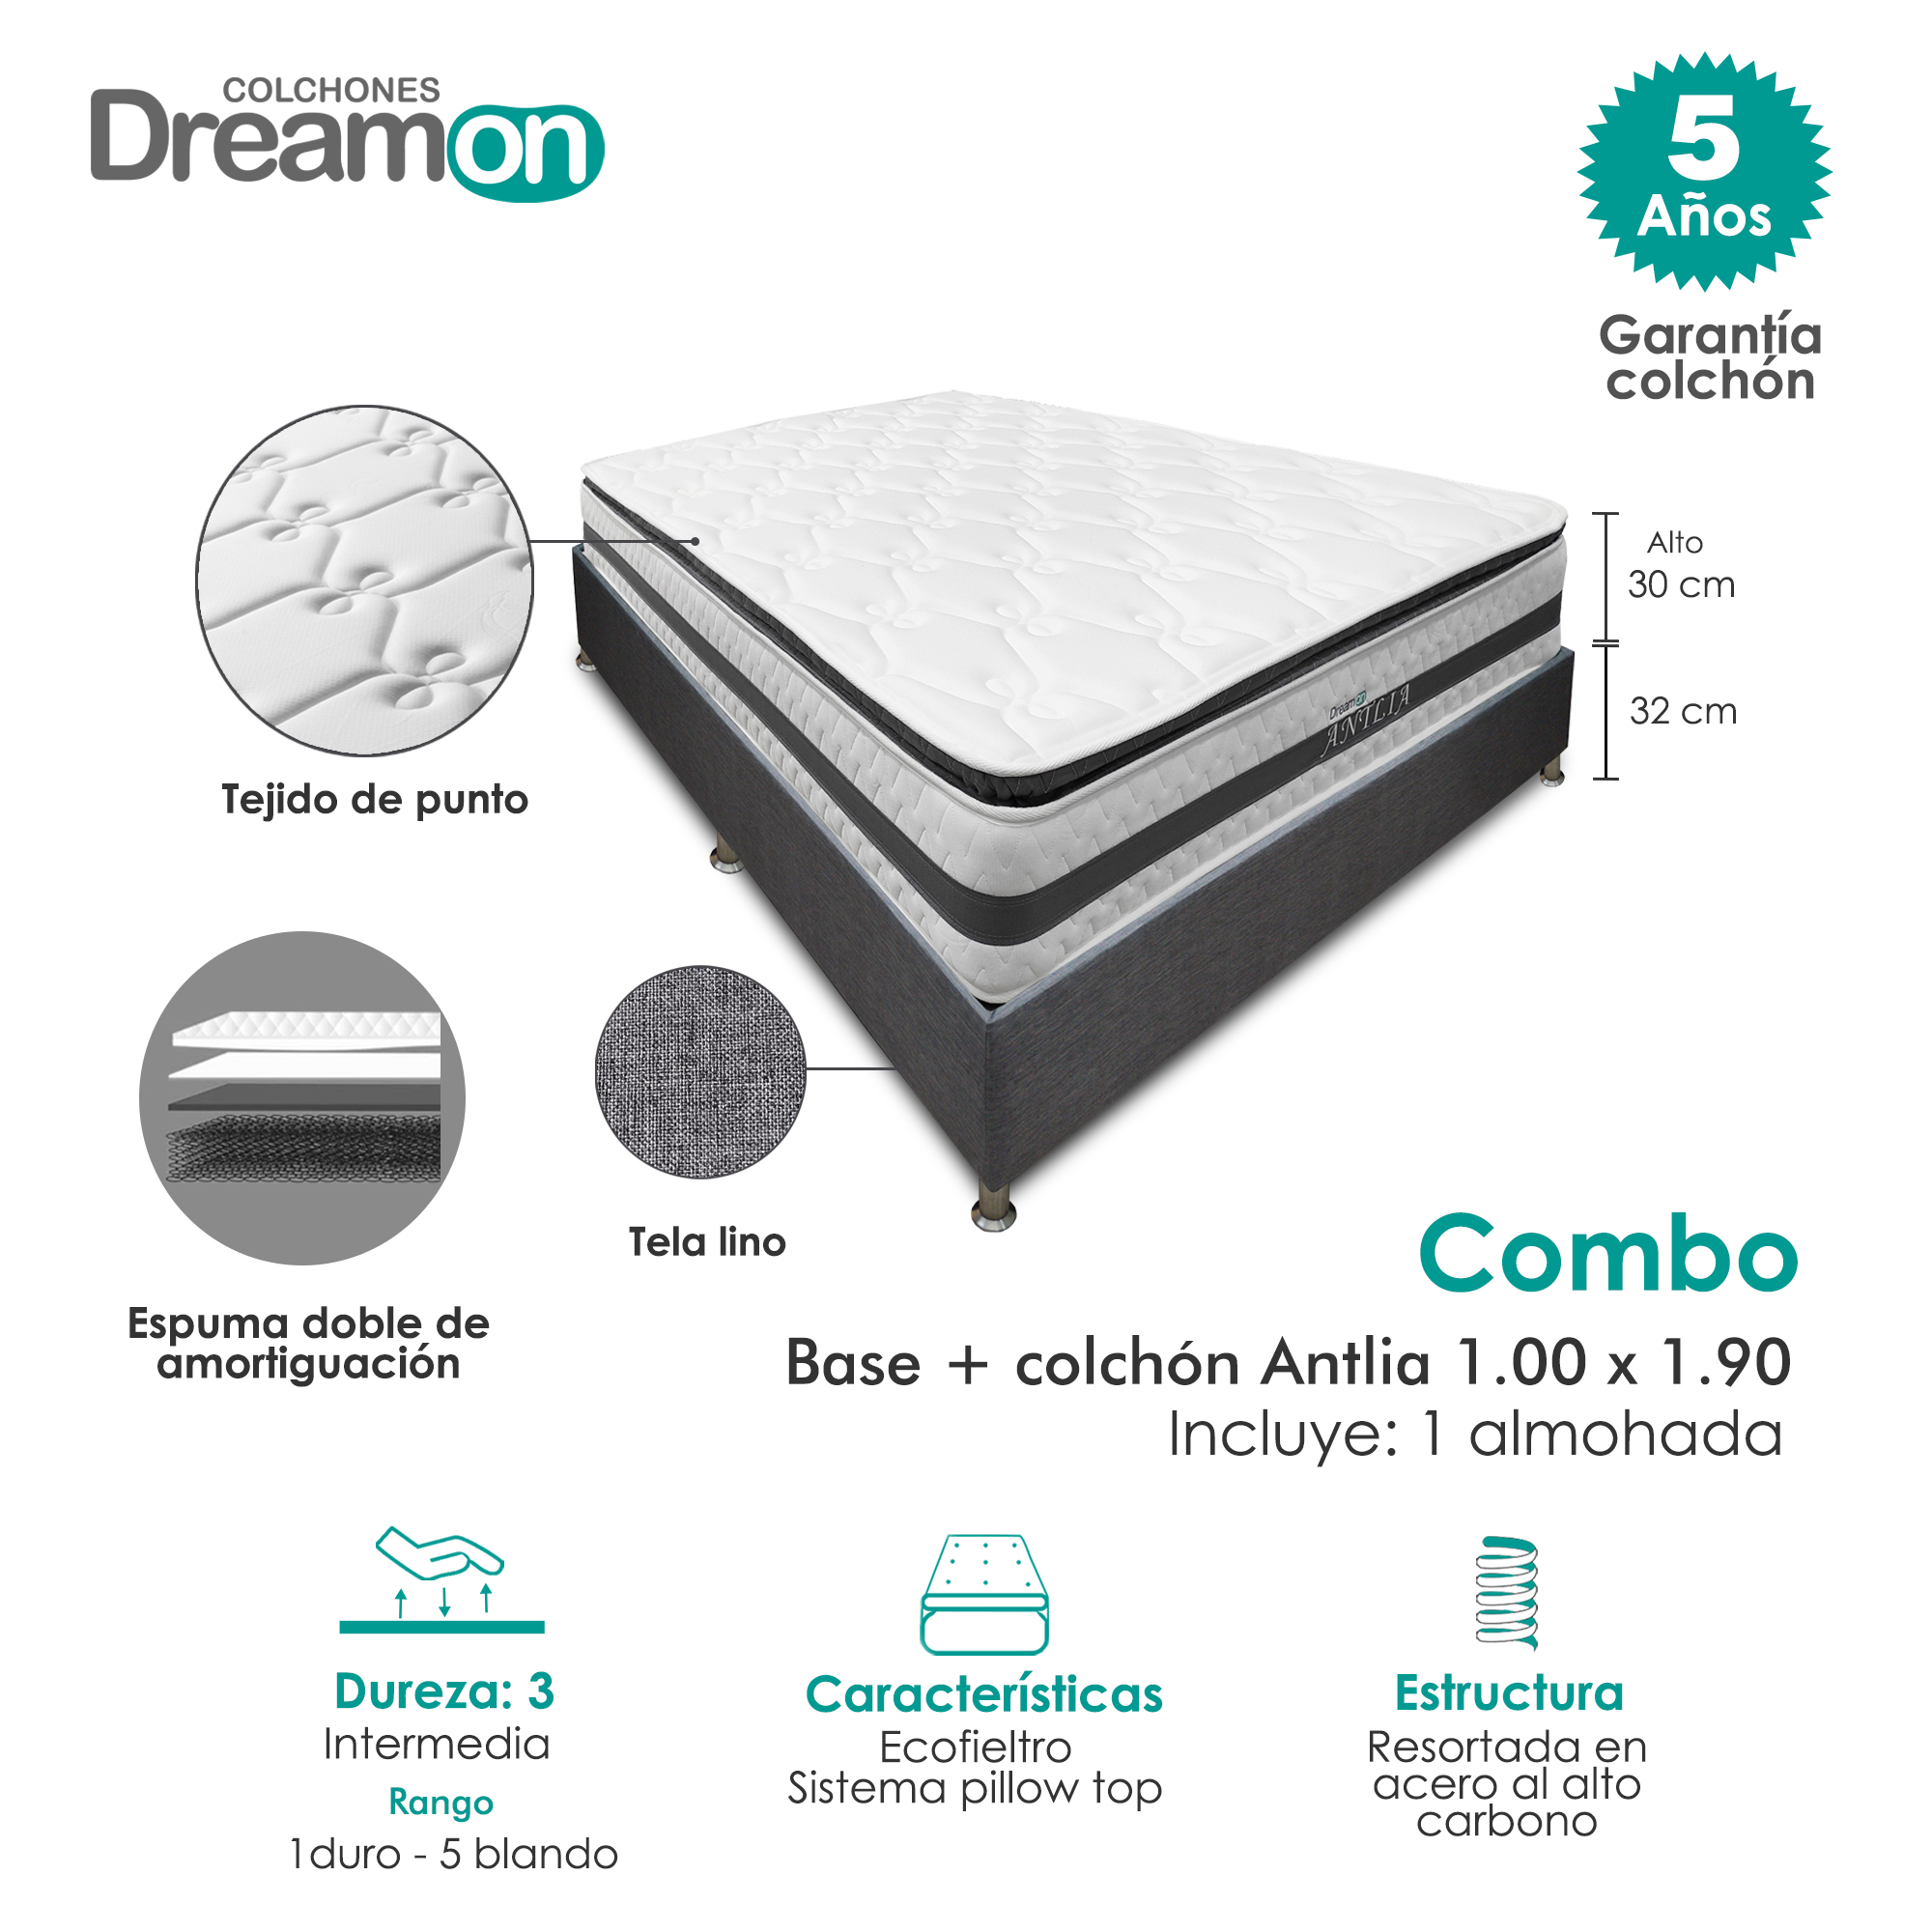 Combo Base Dreamer Plus + Colchon DreamOn Antillas 100 x 190 Dureza Intermedia + Almohada